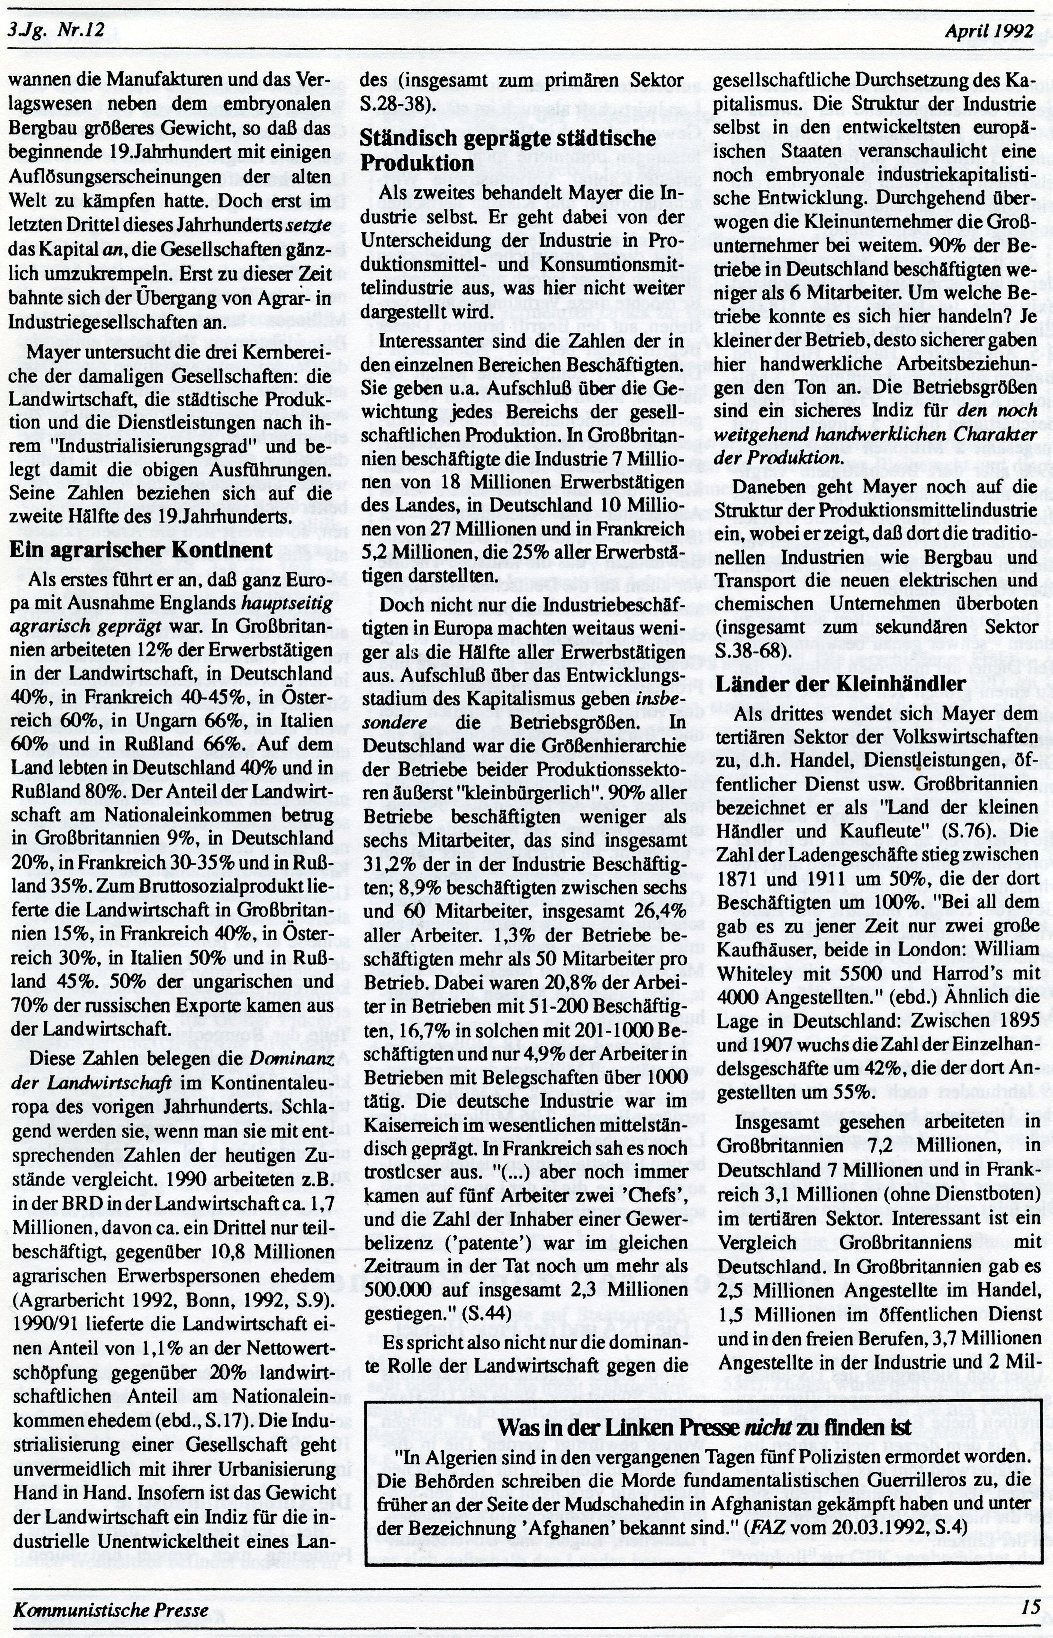 Gelsenkirchen_Kommunistische_Presse_1992_12_015